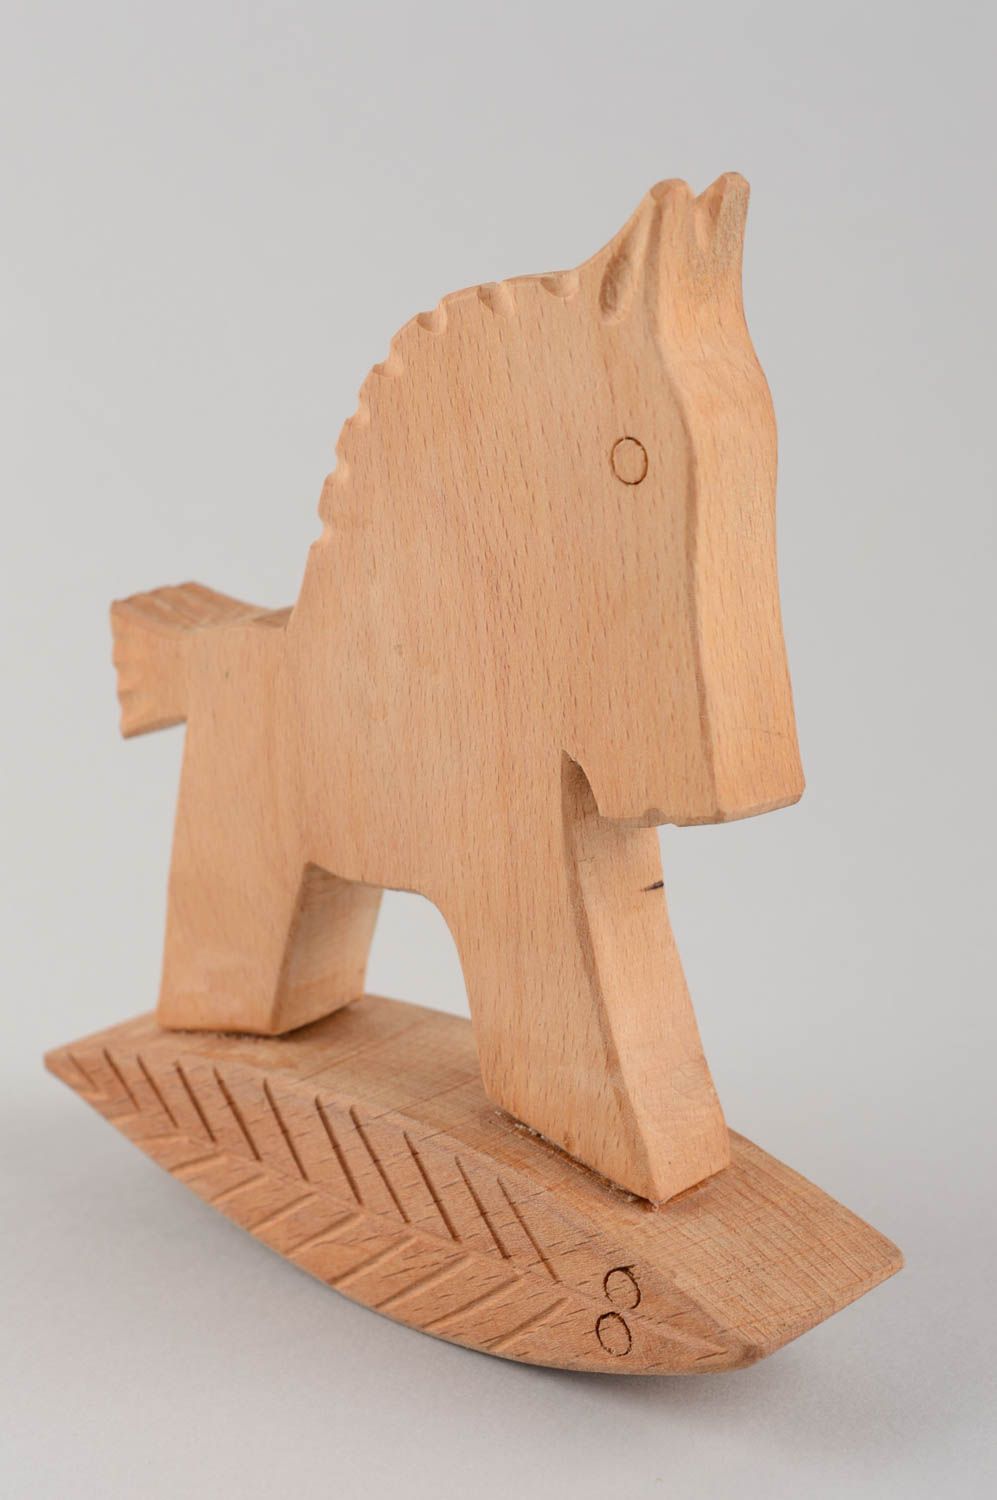 Wooden rocking horse toy for children handmade nursery decor ideas photo 5